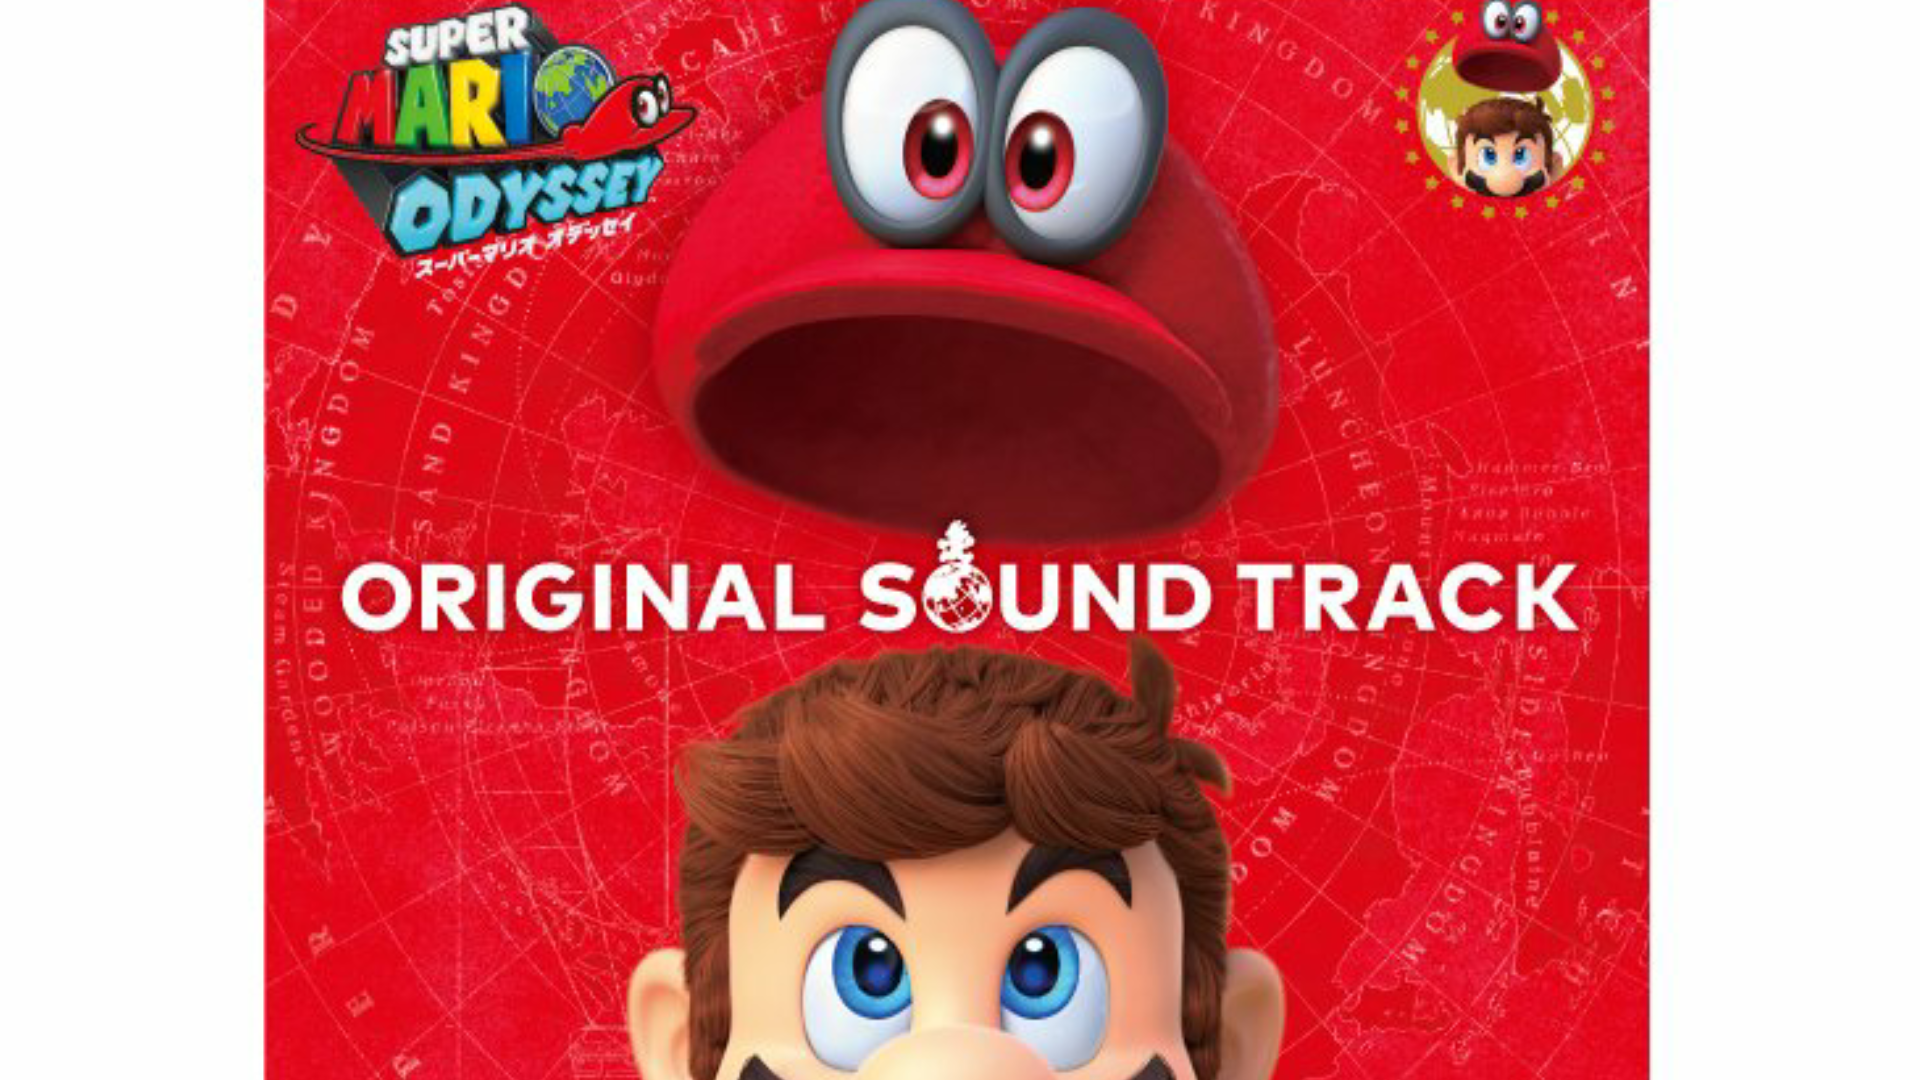 [Act.] El álbum con la banda sonora de Super Mario Odyssey llega a Japón en febrero, una selección se lanzará en iTunes en Occidente